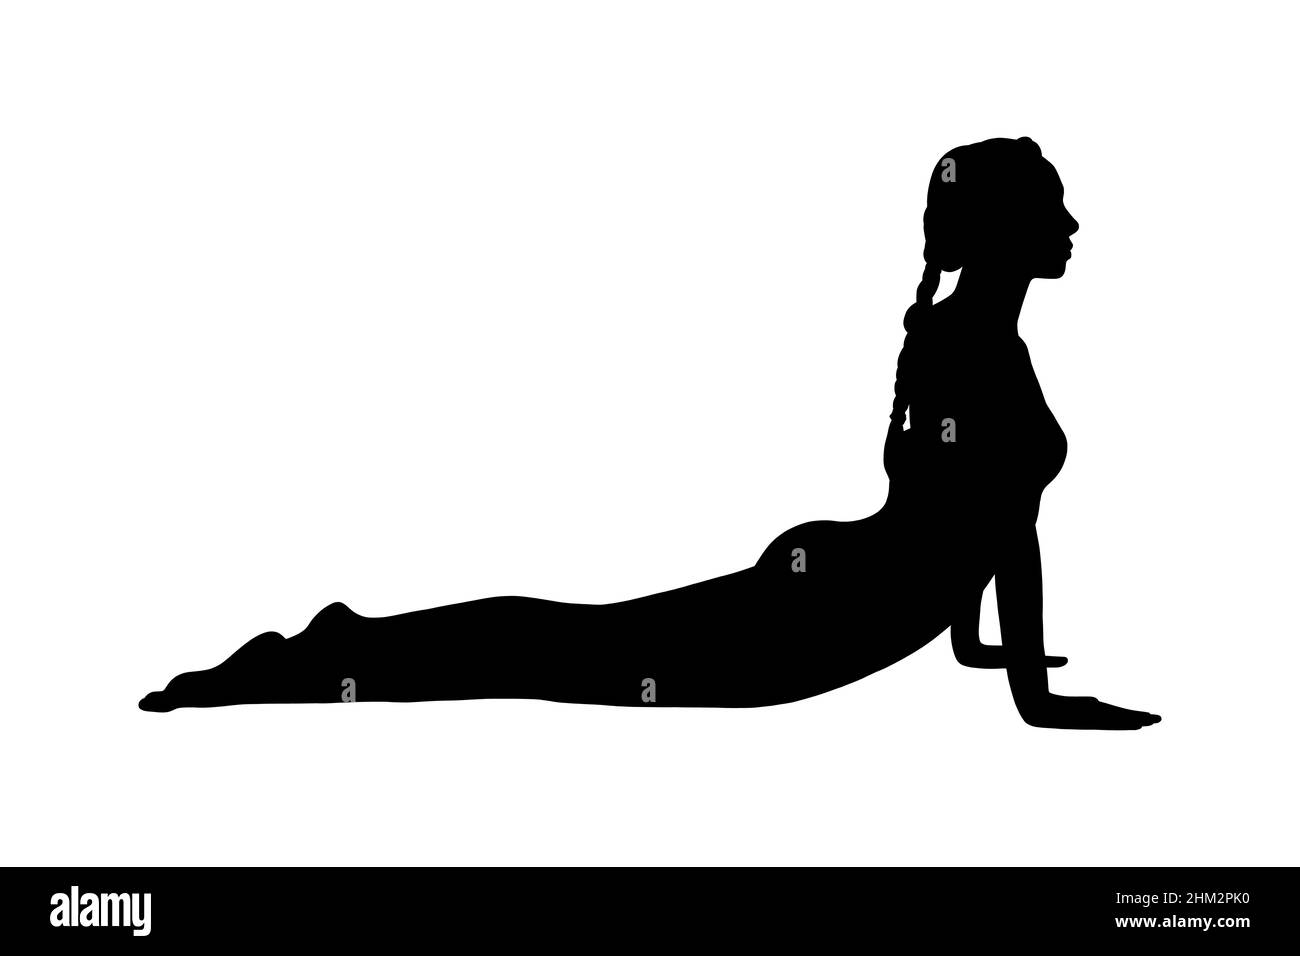 Pose de cobra de yoga ou bhujangasana.Femme silhouette pratiquant le yoga de résistance pose.Illustration vectorielle isolée sur fond blanc Illustration de Vecteur